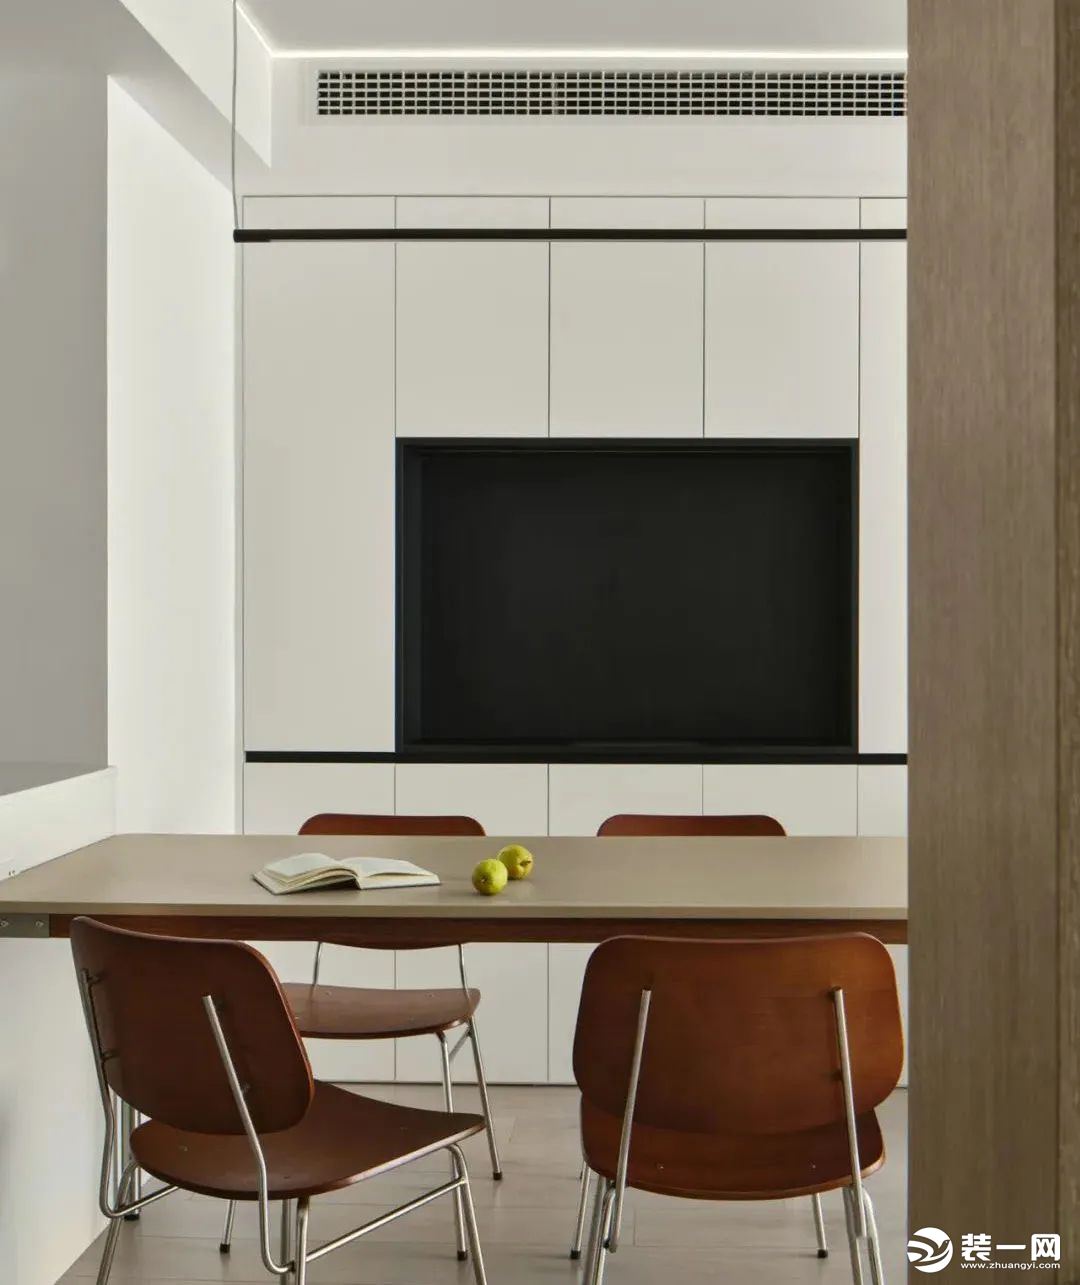 餐厅，磨砂质感的长桌搭配暖色调餐椅，以黑白主色调设计的餐边柜为背景，内嵌式开放设计适合收纳常用物品，